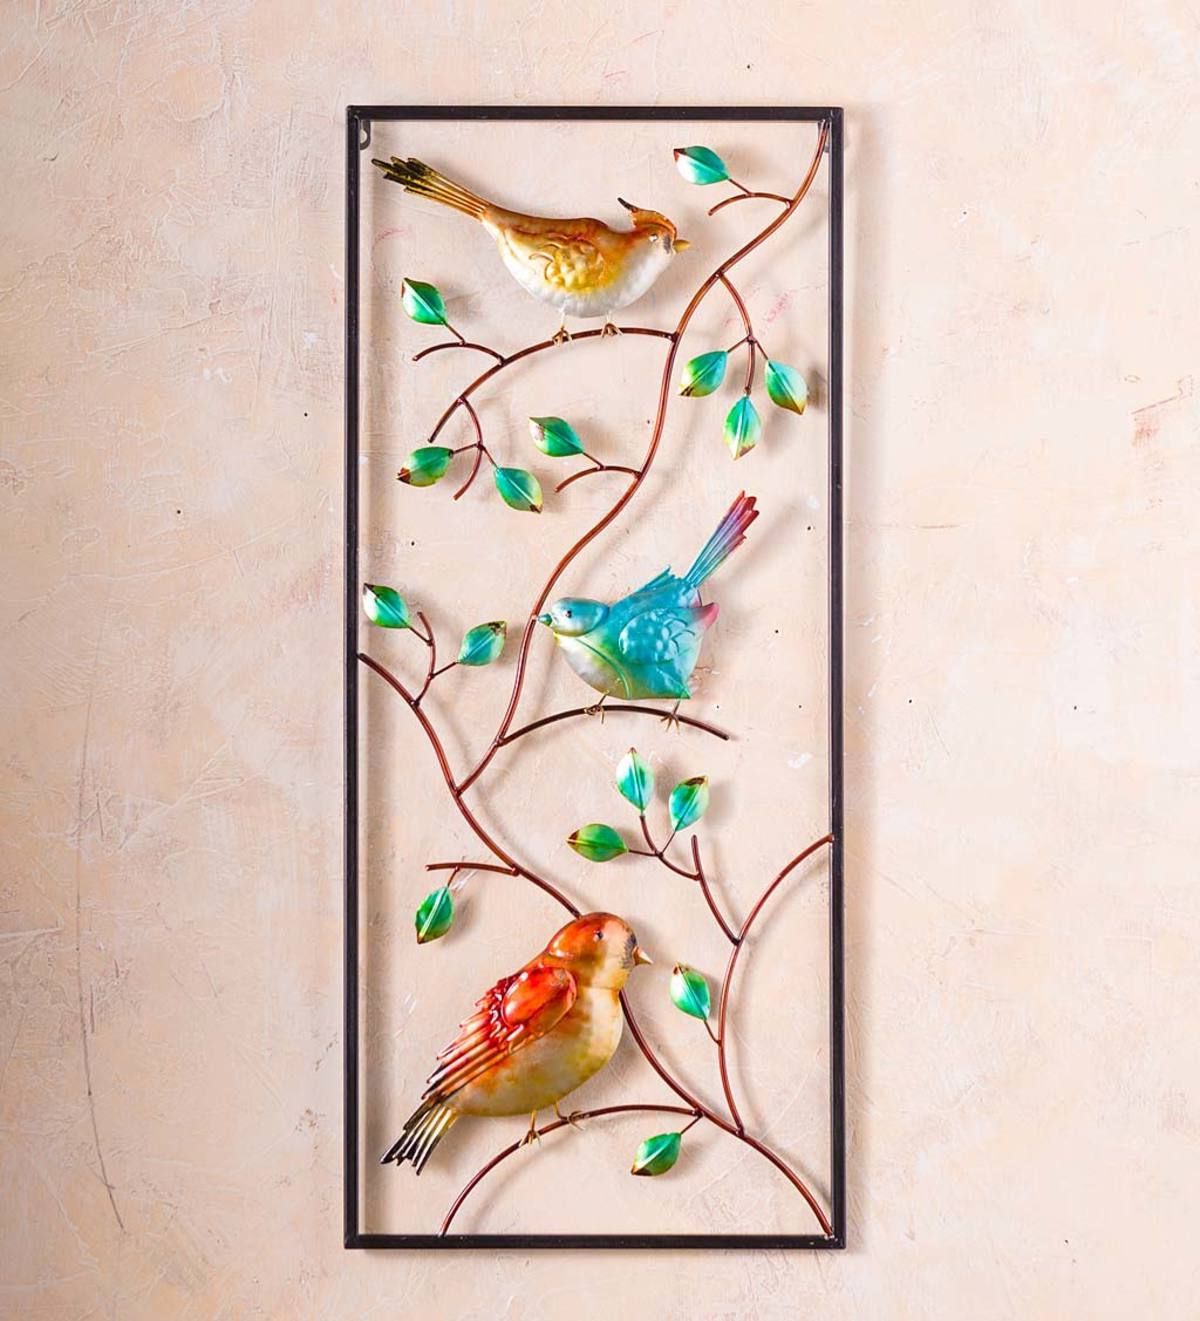 2018 Indoor/outdoor Metal Bird Vertical Wall Art Features Colorful Birds Pertaining To Bird Metal Wall Art (View 1 of 15)